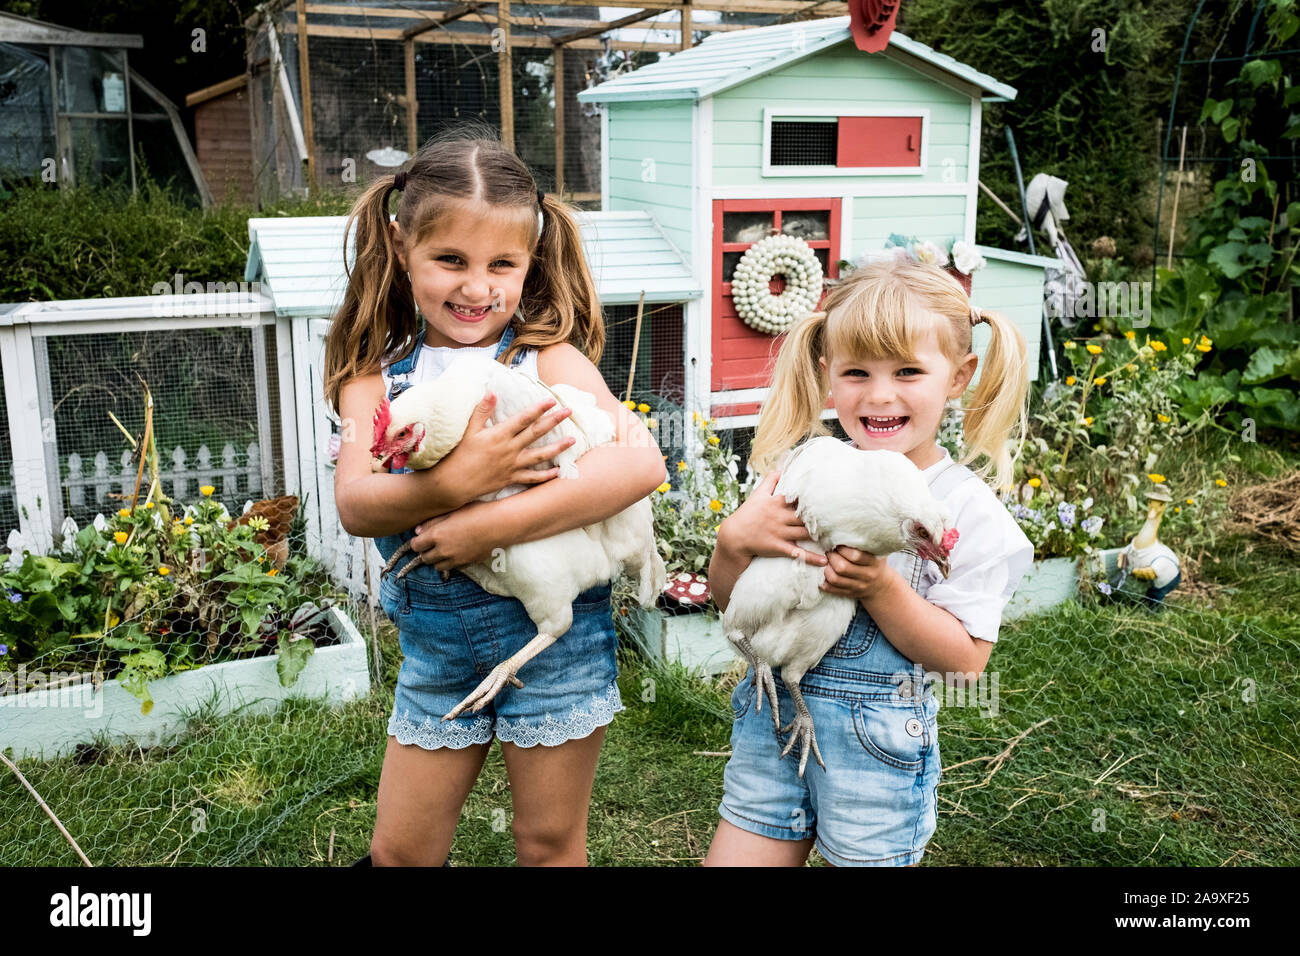 Deux filles debout en face de poulailler dans un jardin, holding white poulets, smiling at camera. Banque D'Images